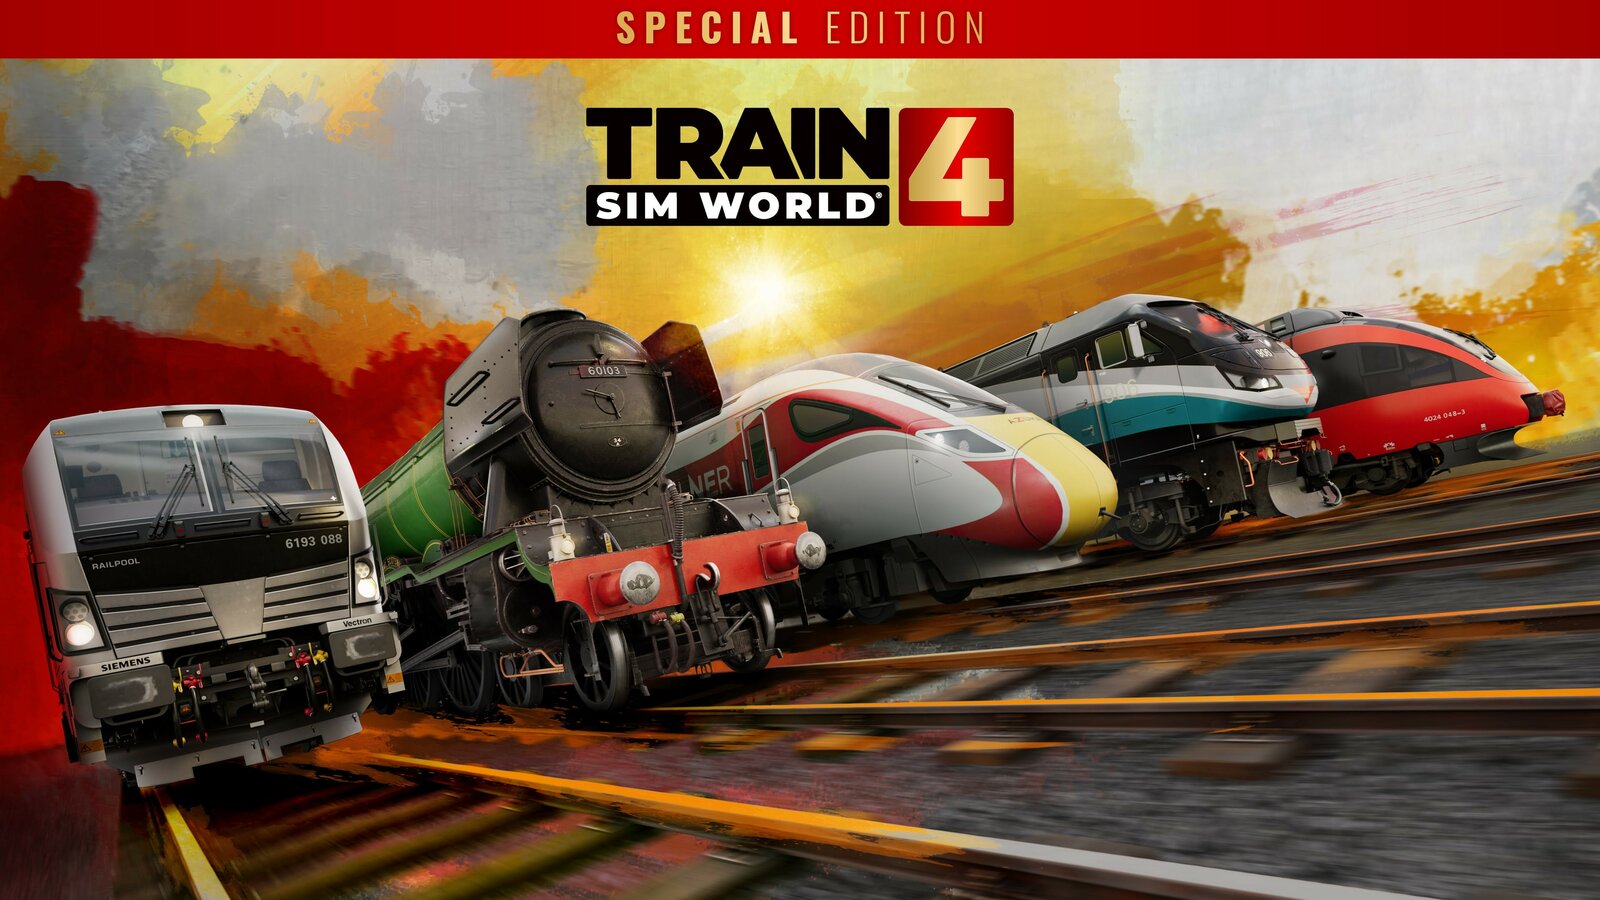 Train Sim World 4 - Special Edition